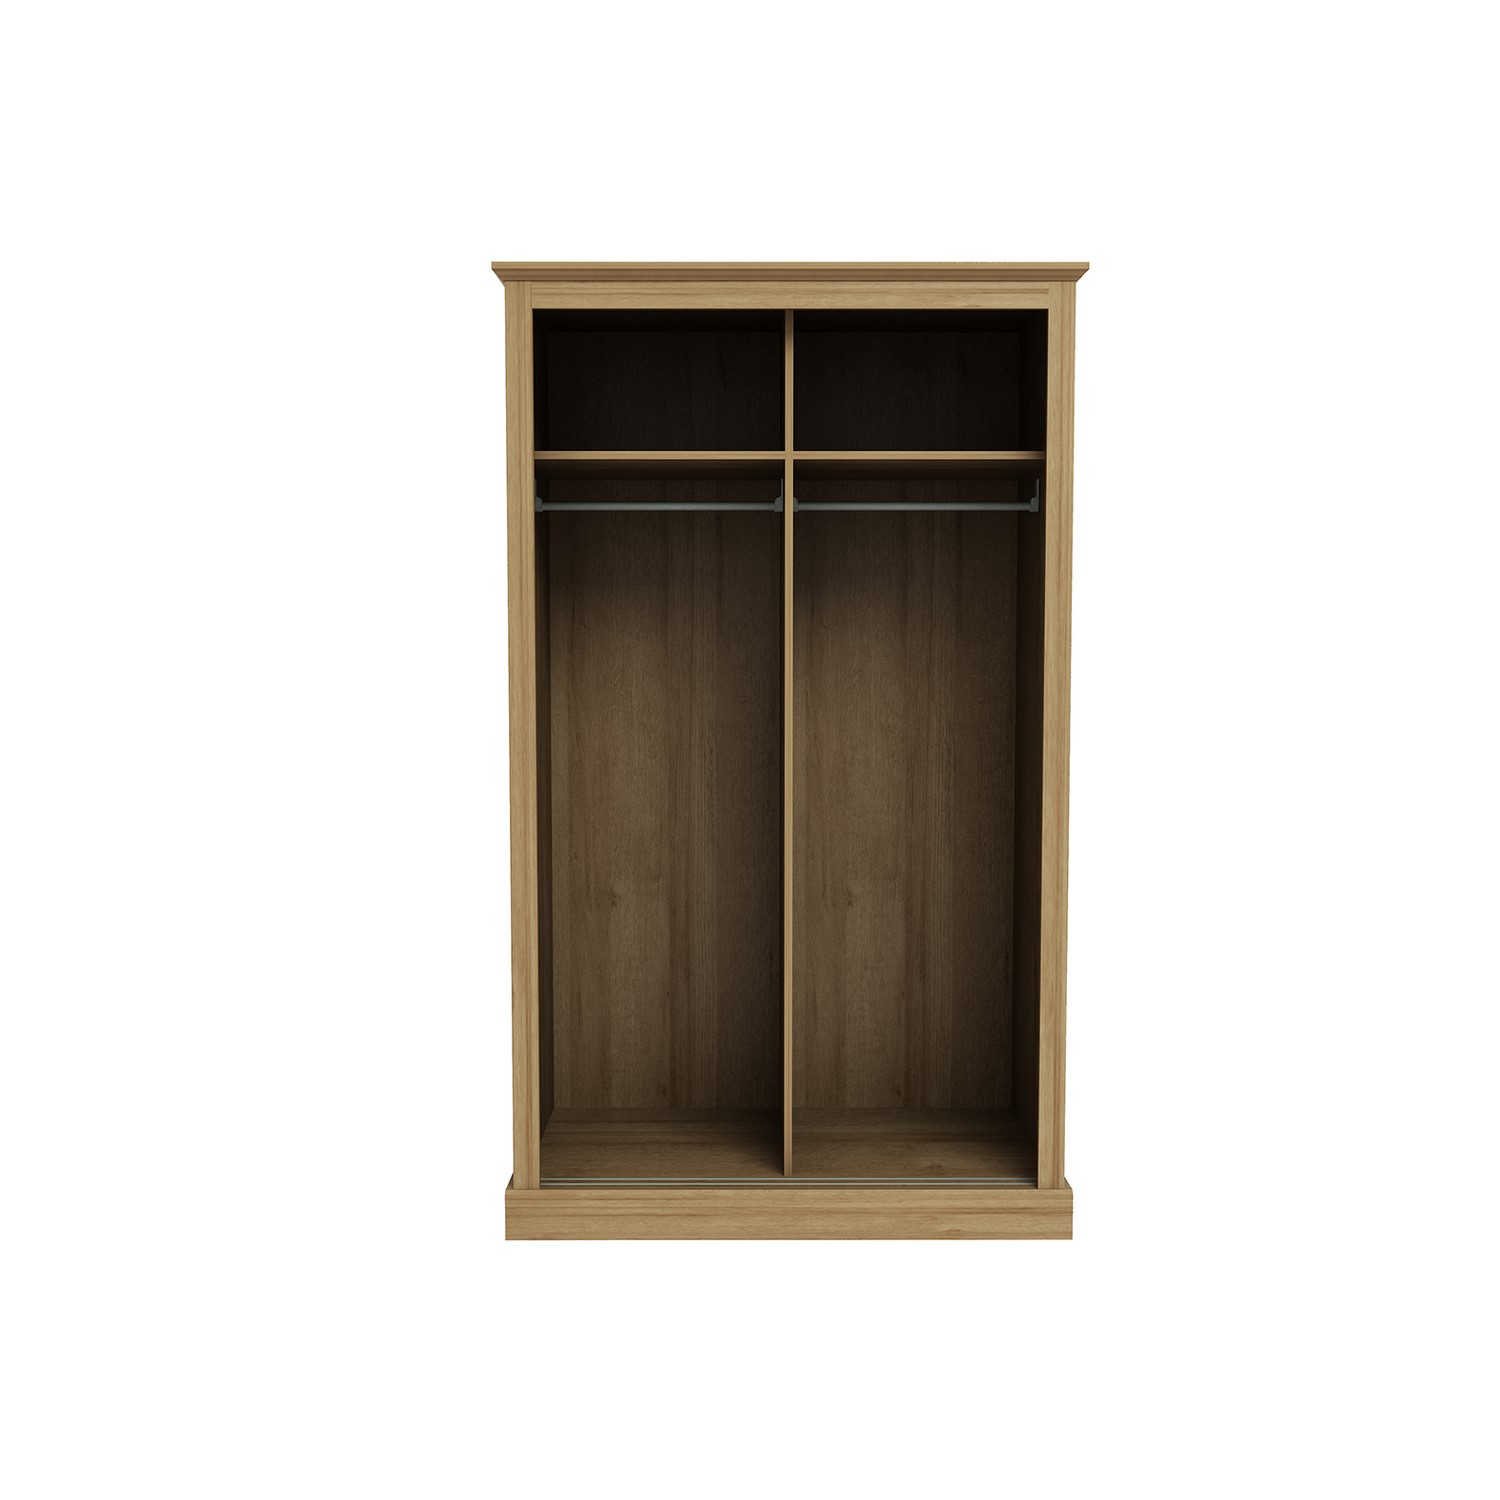 Read more about Oak 2 door sliding mirrored wardrobe devon lpd